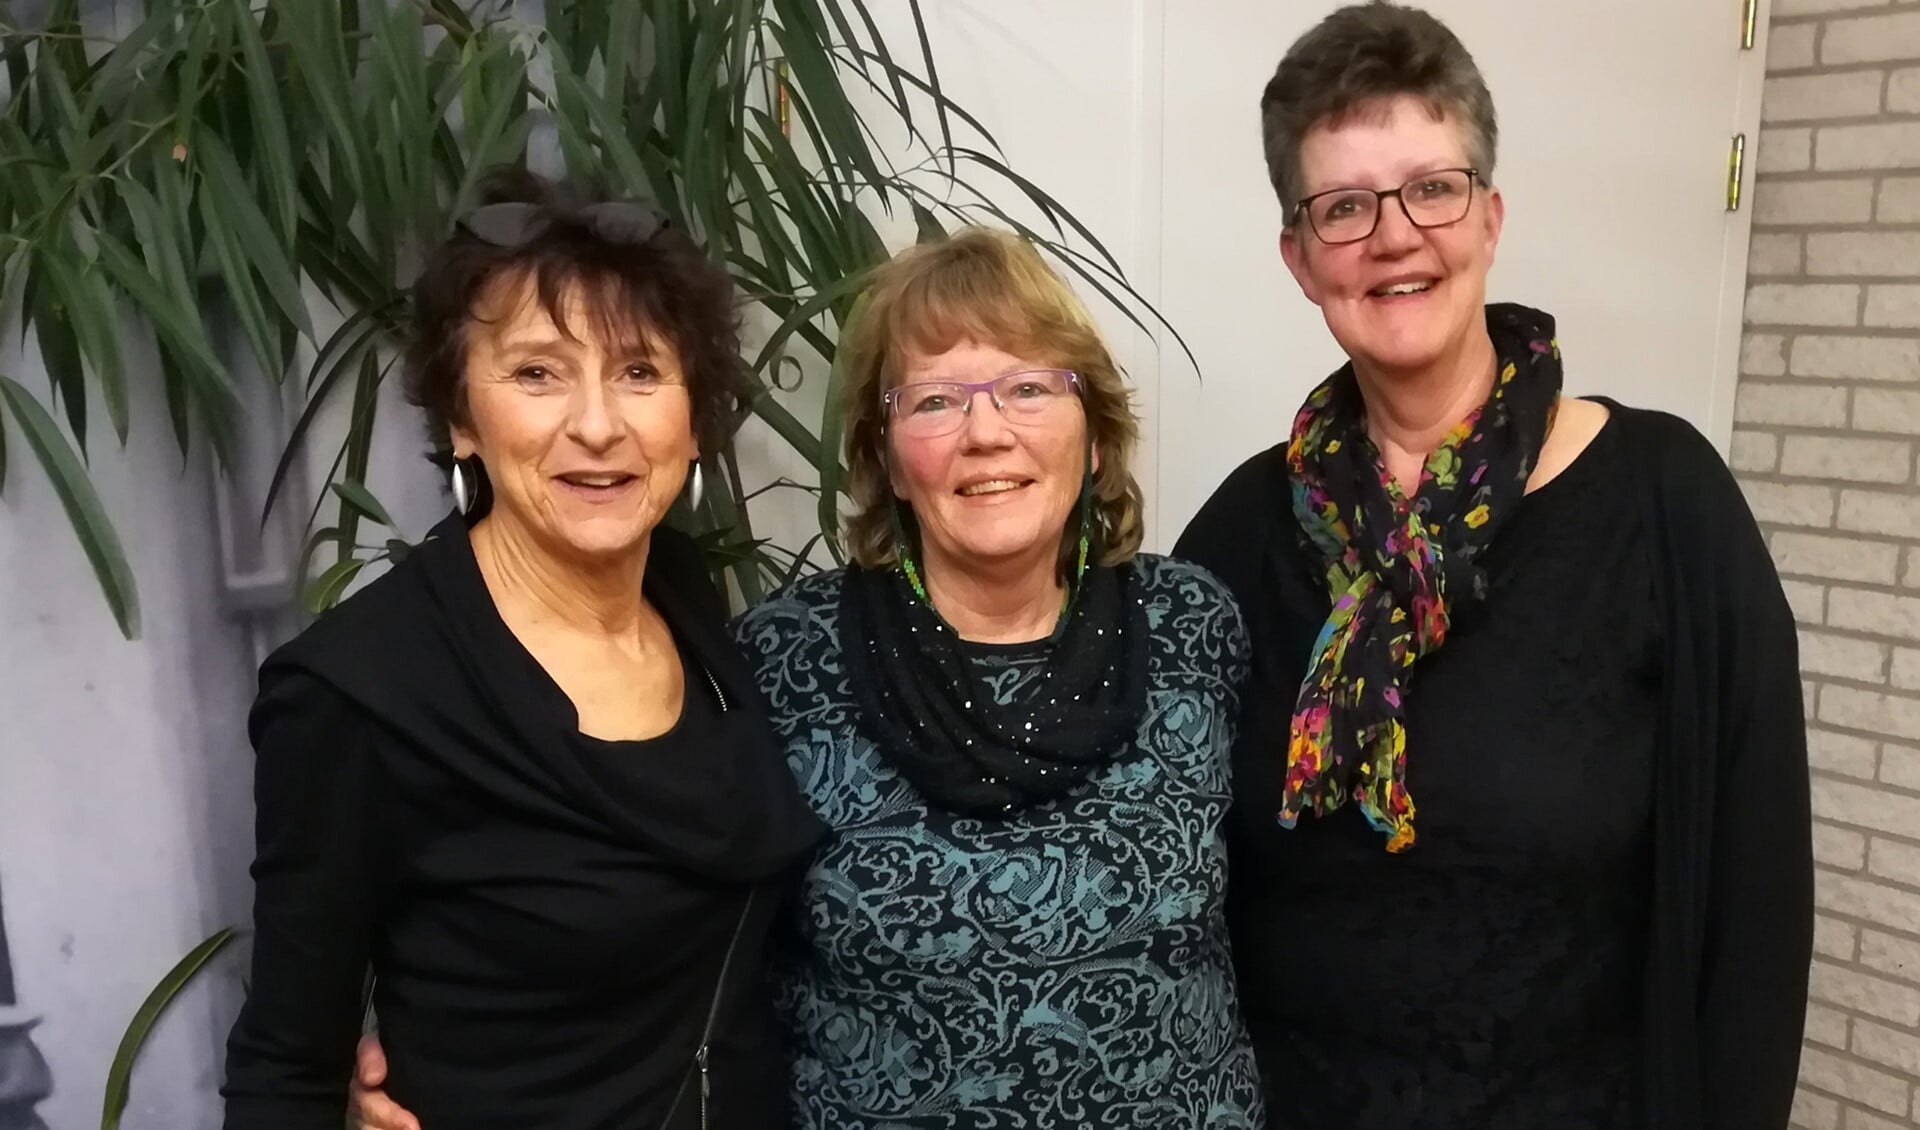 Ina Los, Maria Evers en Ciska Koole zorgen voor een gezellige viering in Ons Dorpshuis Nieuwe-Tonge.